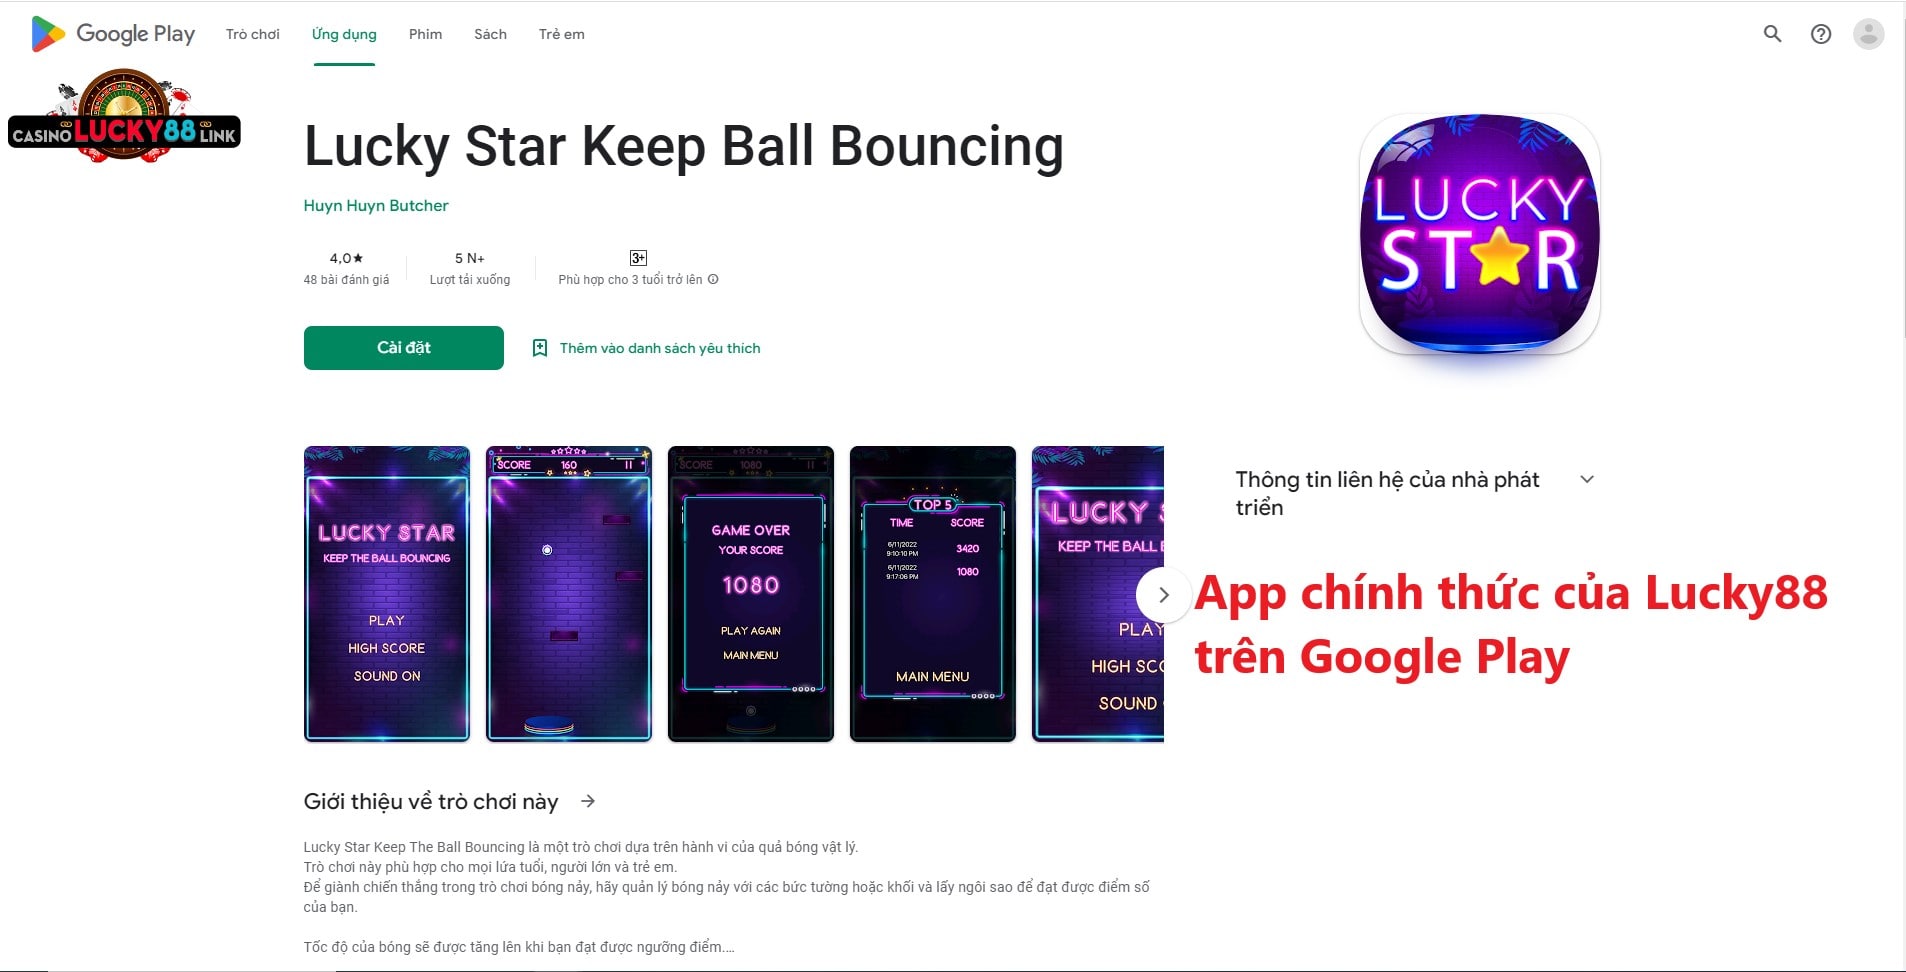 App chính thức của Lucky88 trên Google Play